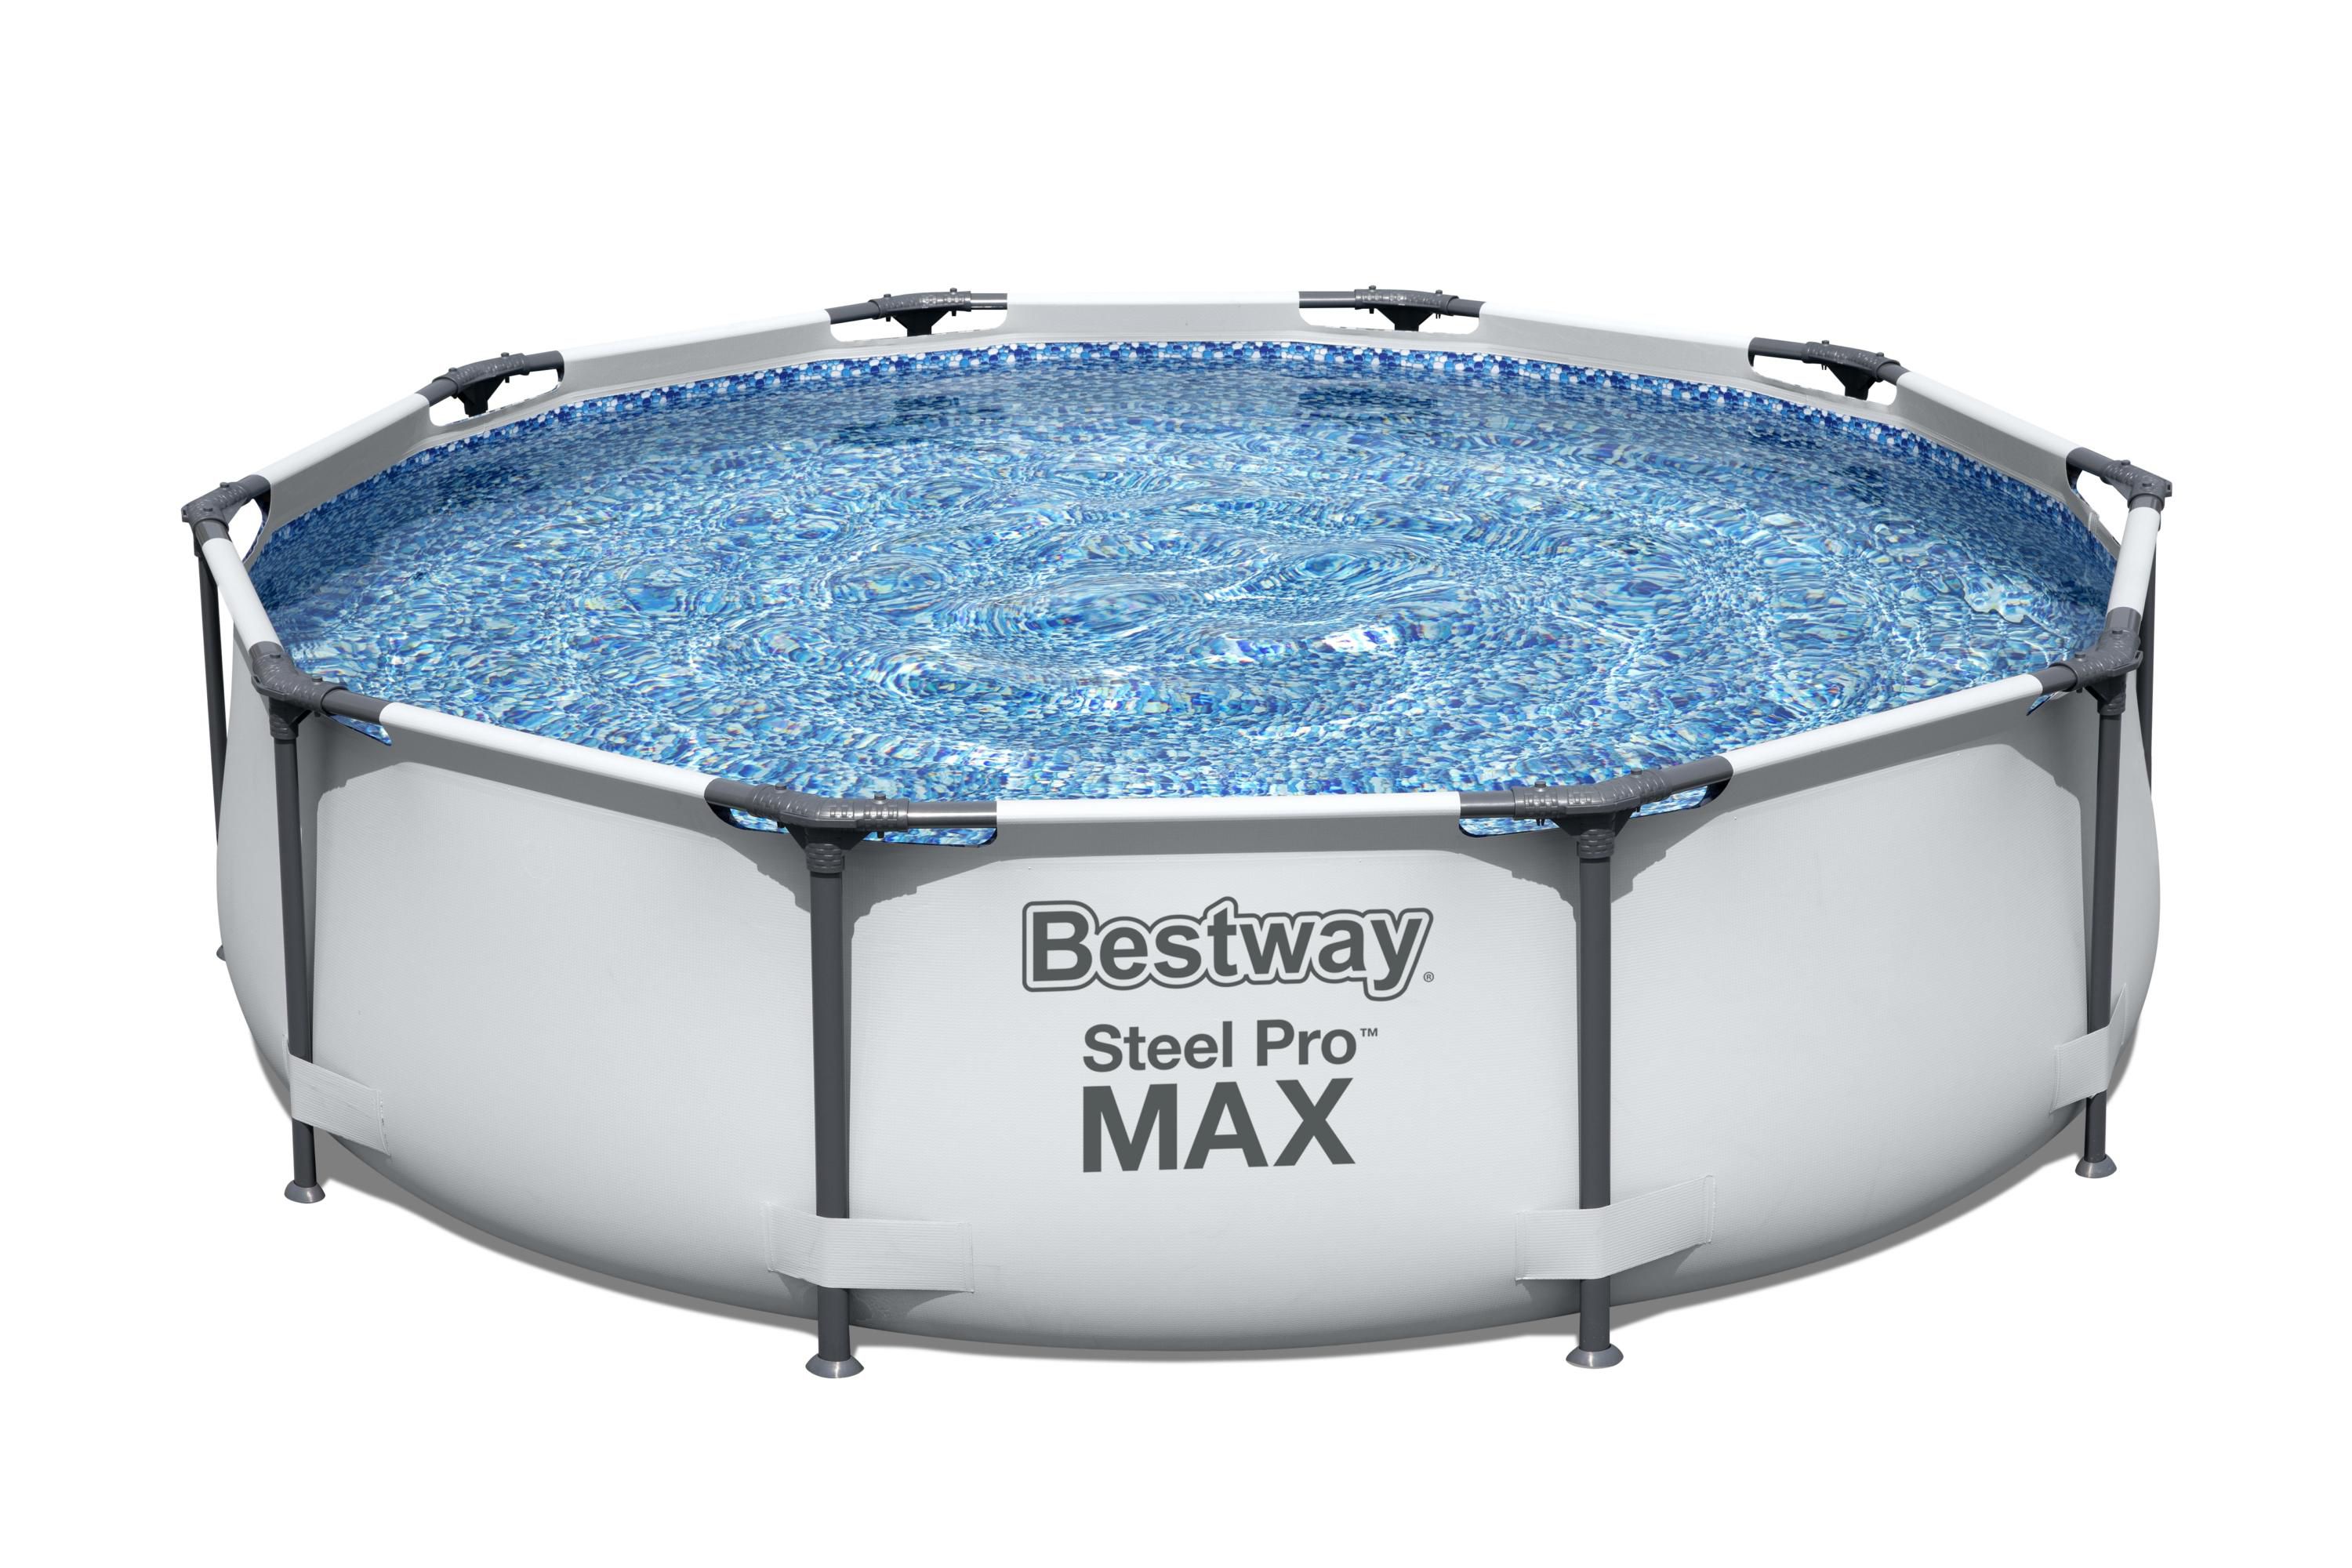 Bestway Steel pro max Pool (W) 3.05m x (L) 3.05m